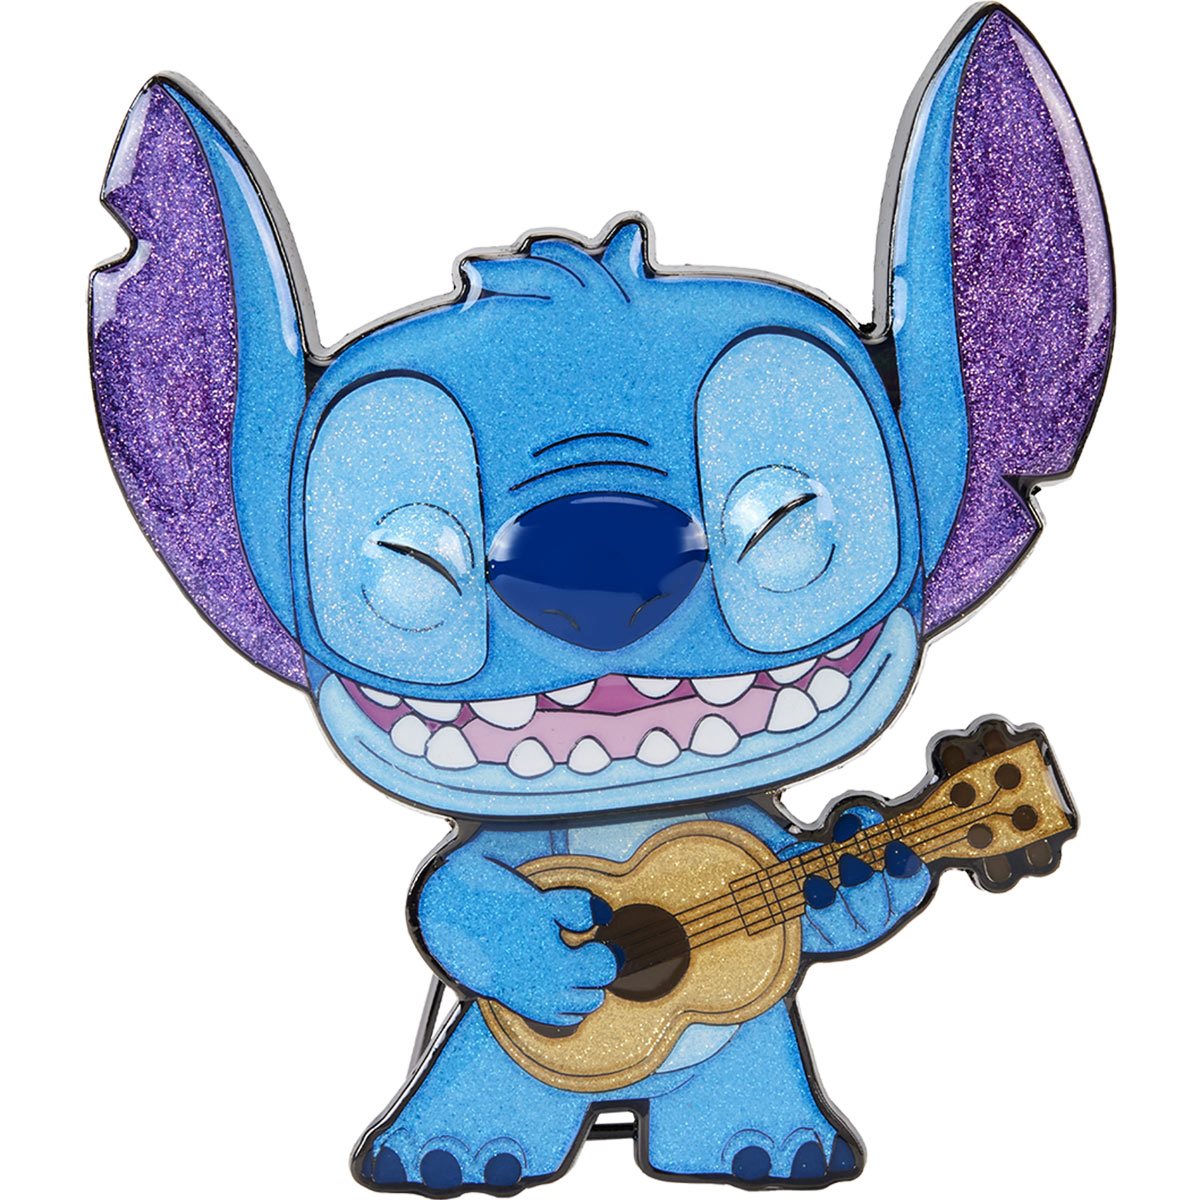 Funko Pop! Disney Lilo & Stitch Stitch with Ukelele • Price »